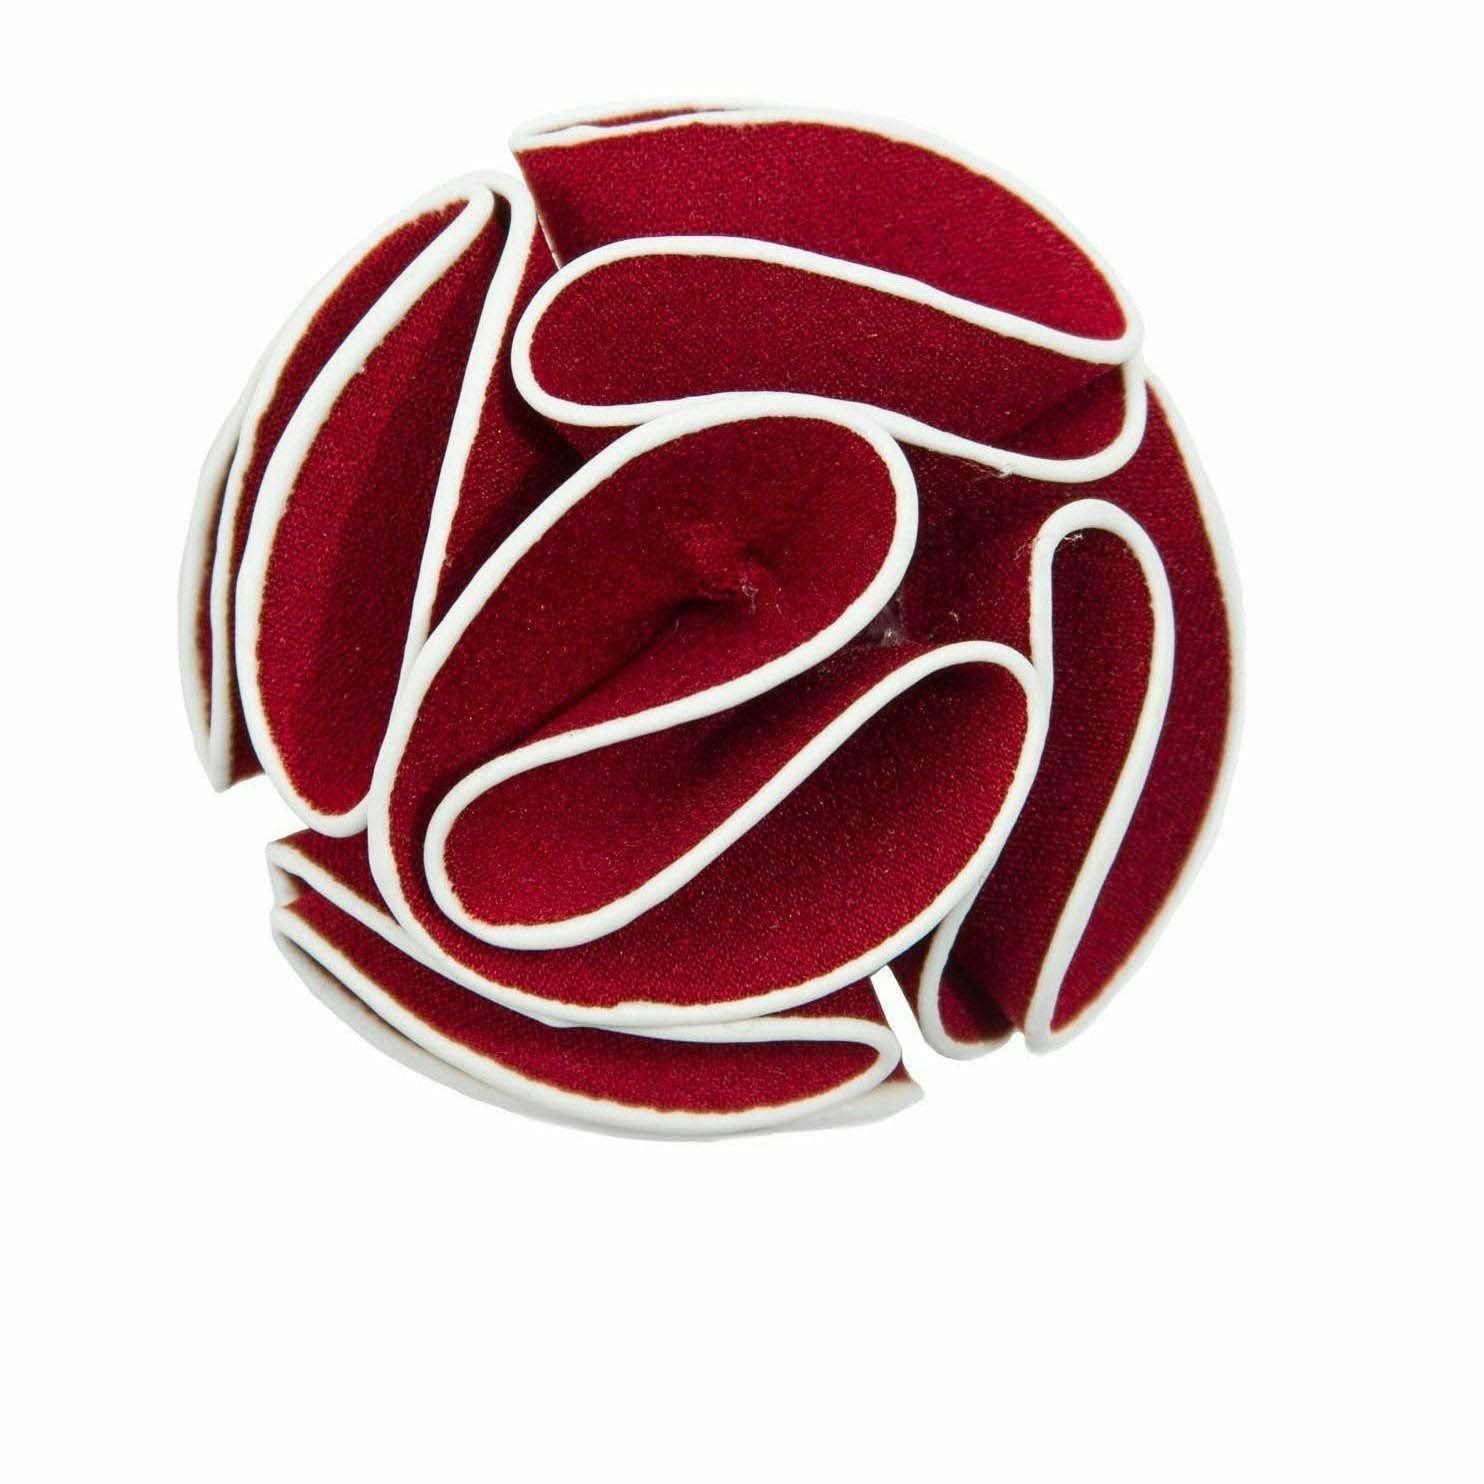 Vittorio Vico Men's Formal Trim Rose Flower Lapel Pin